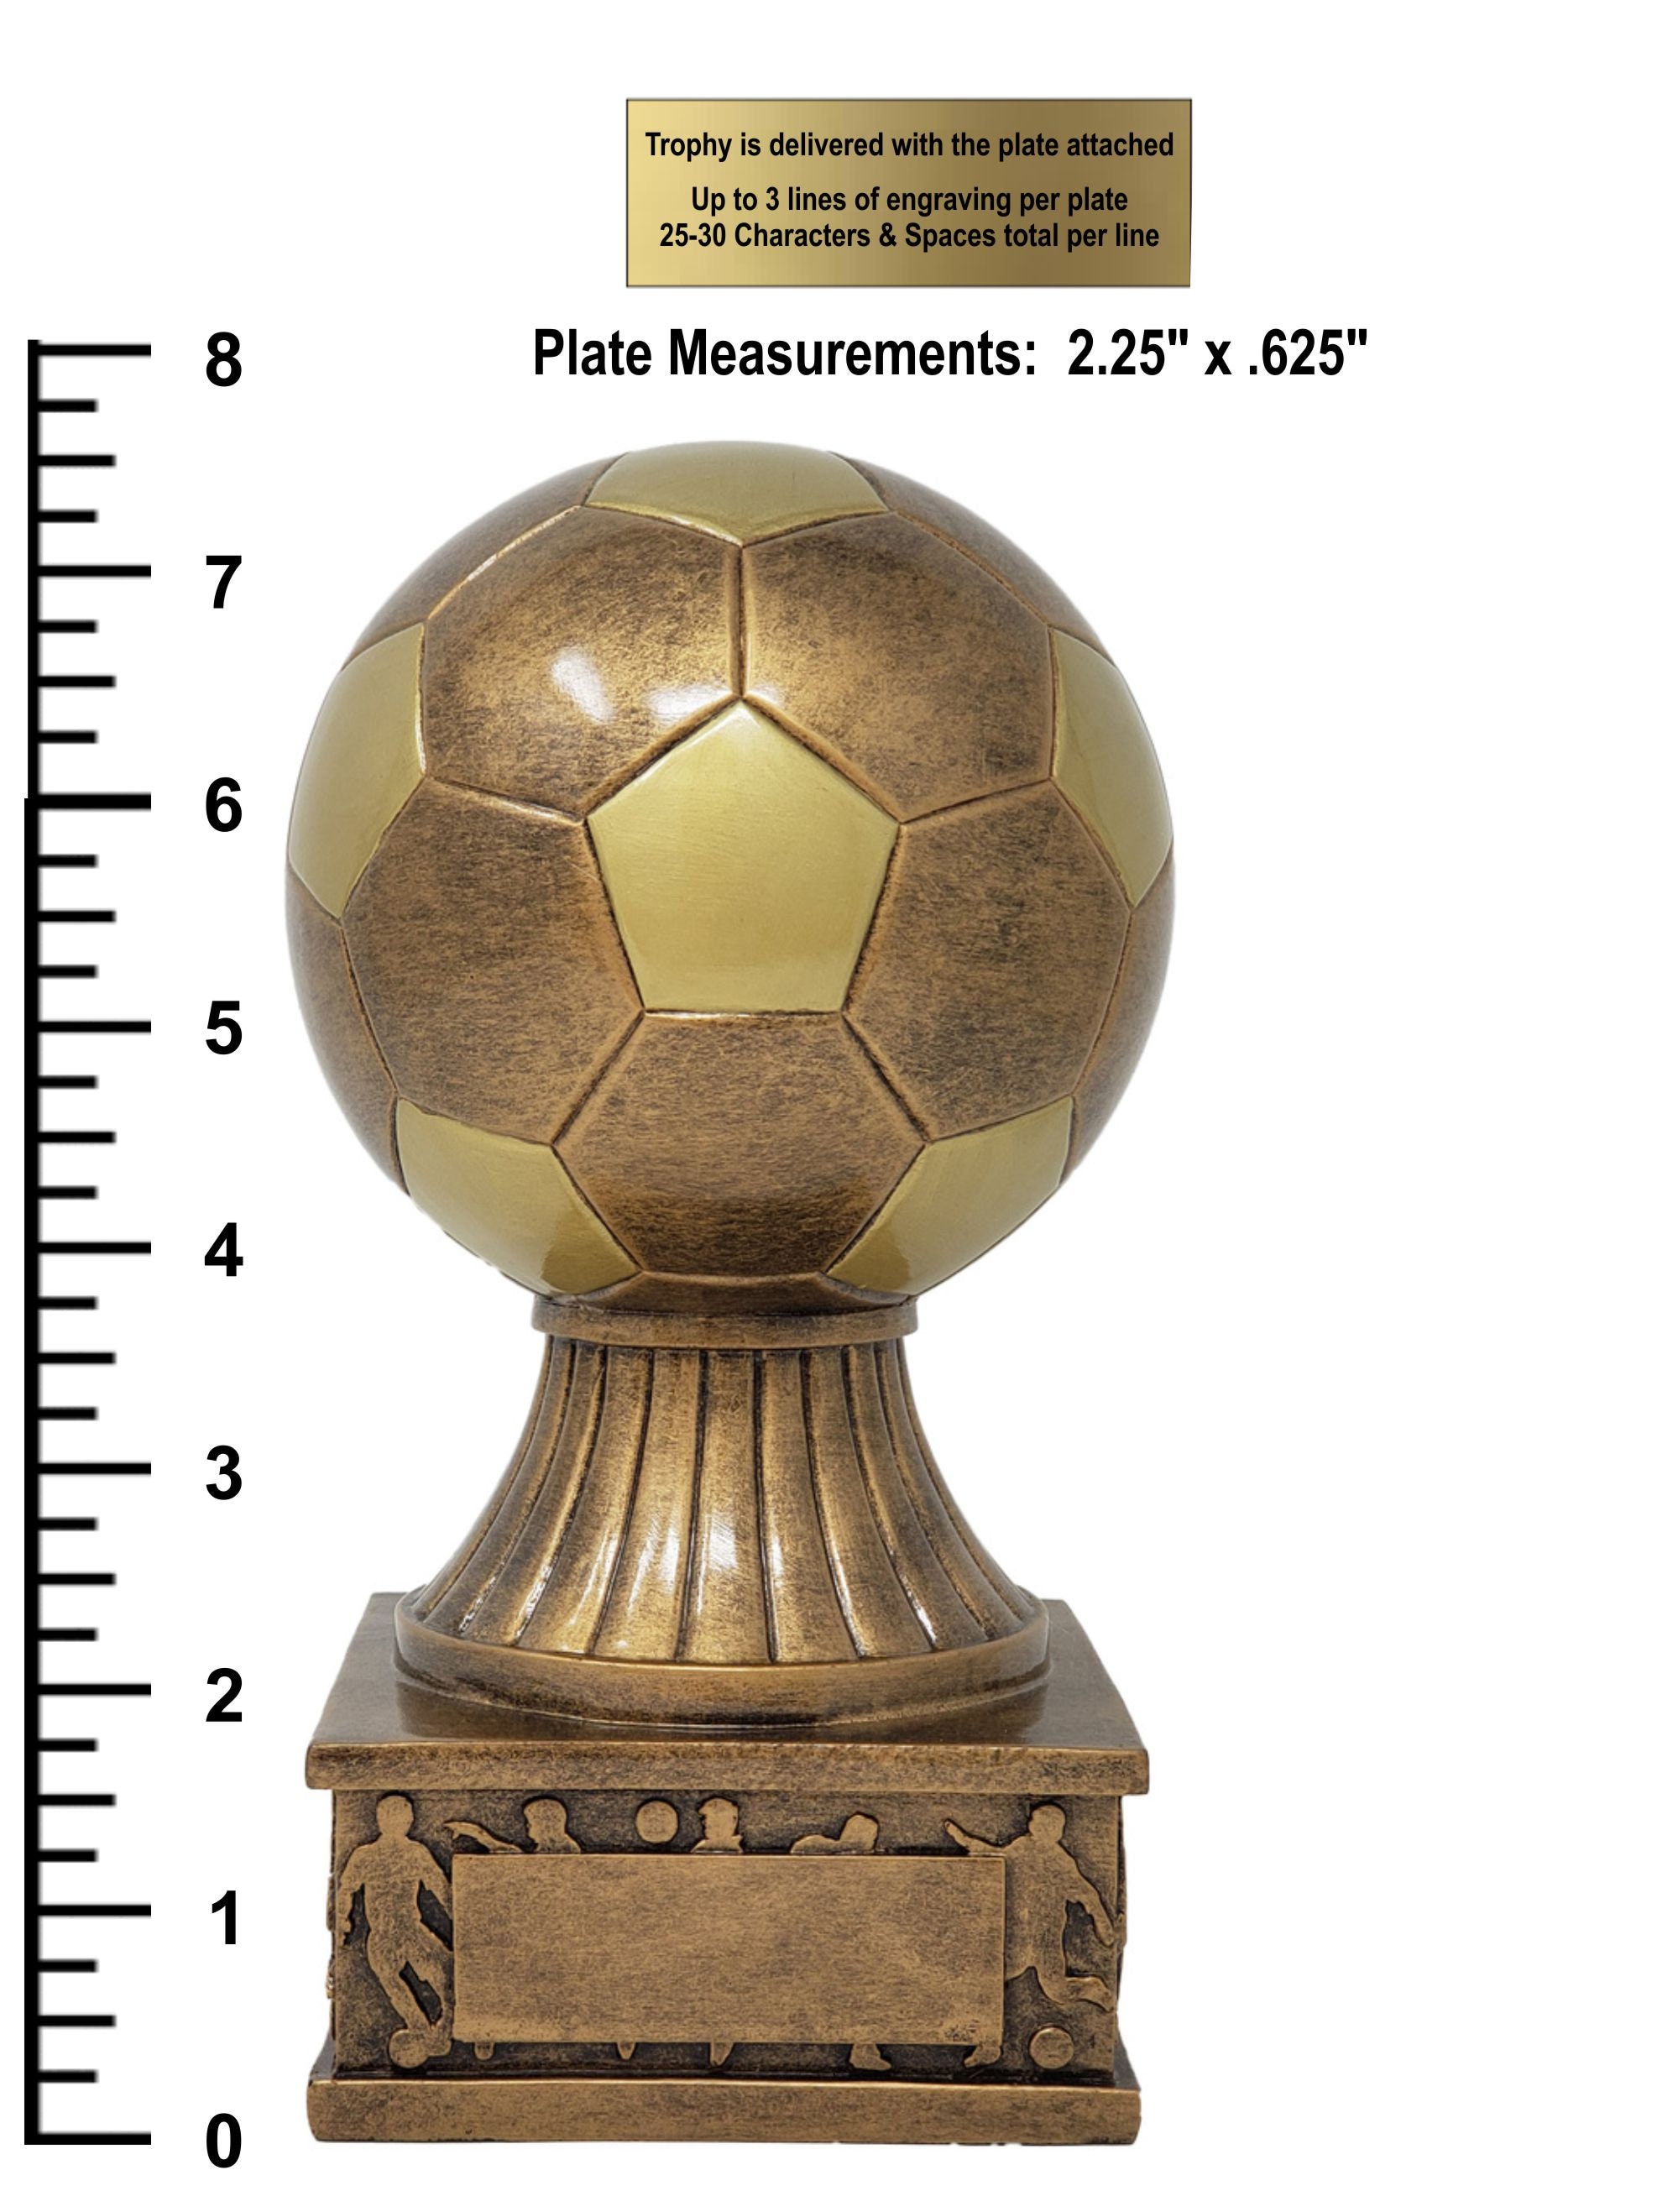 Achetez La Récompense Parfaite : Trophée Ballon De Foot - Cp4336b